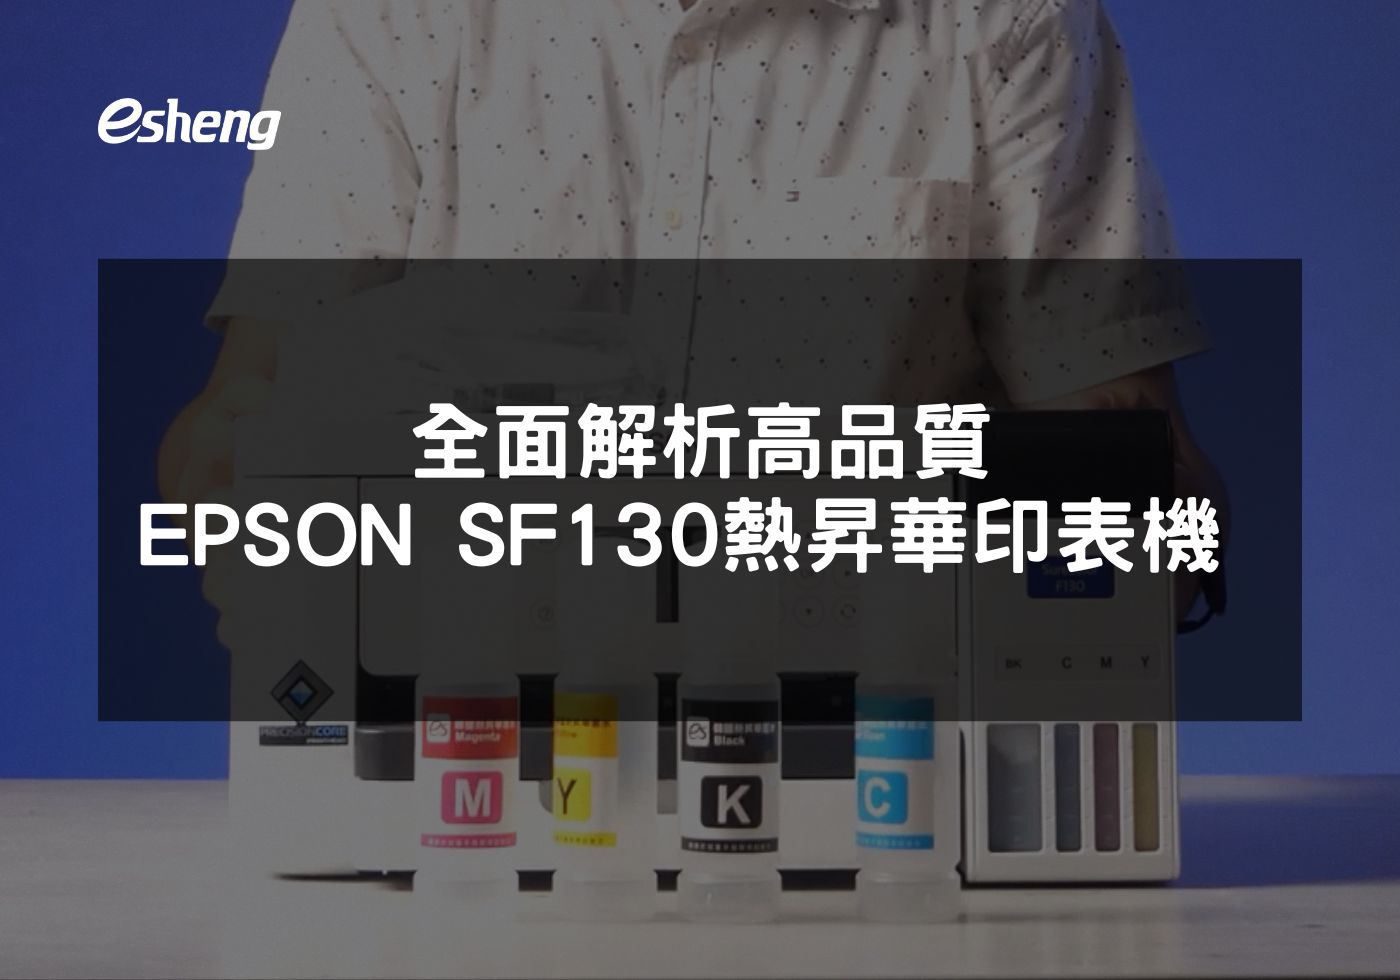 選擇 EPSON F130 提升印刷品質與效率